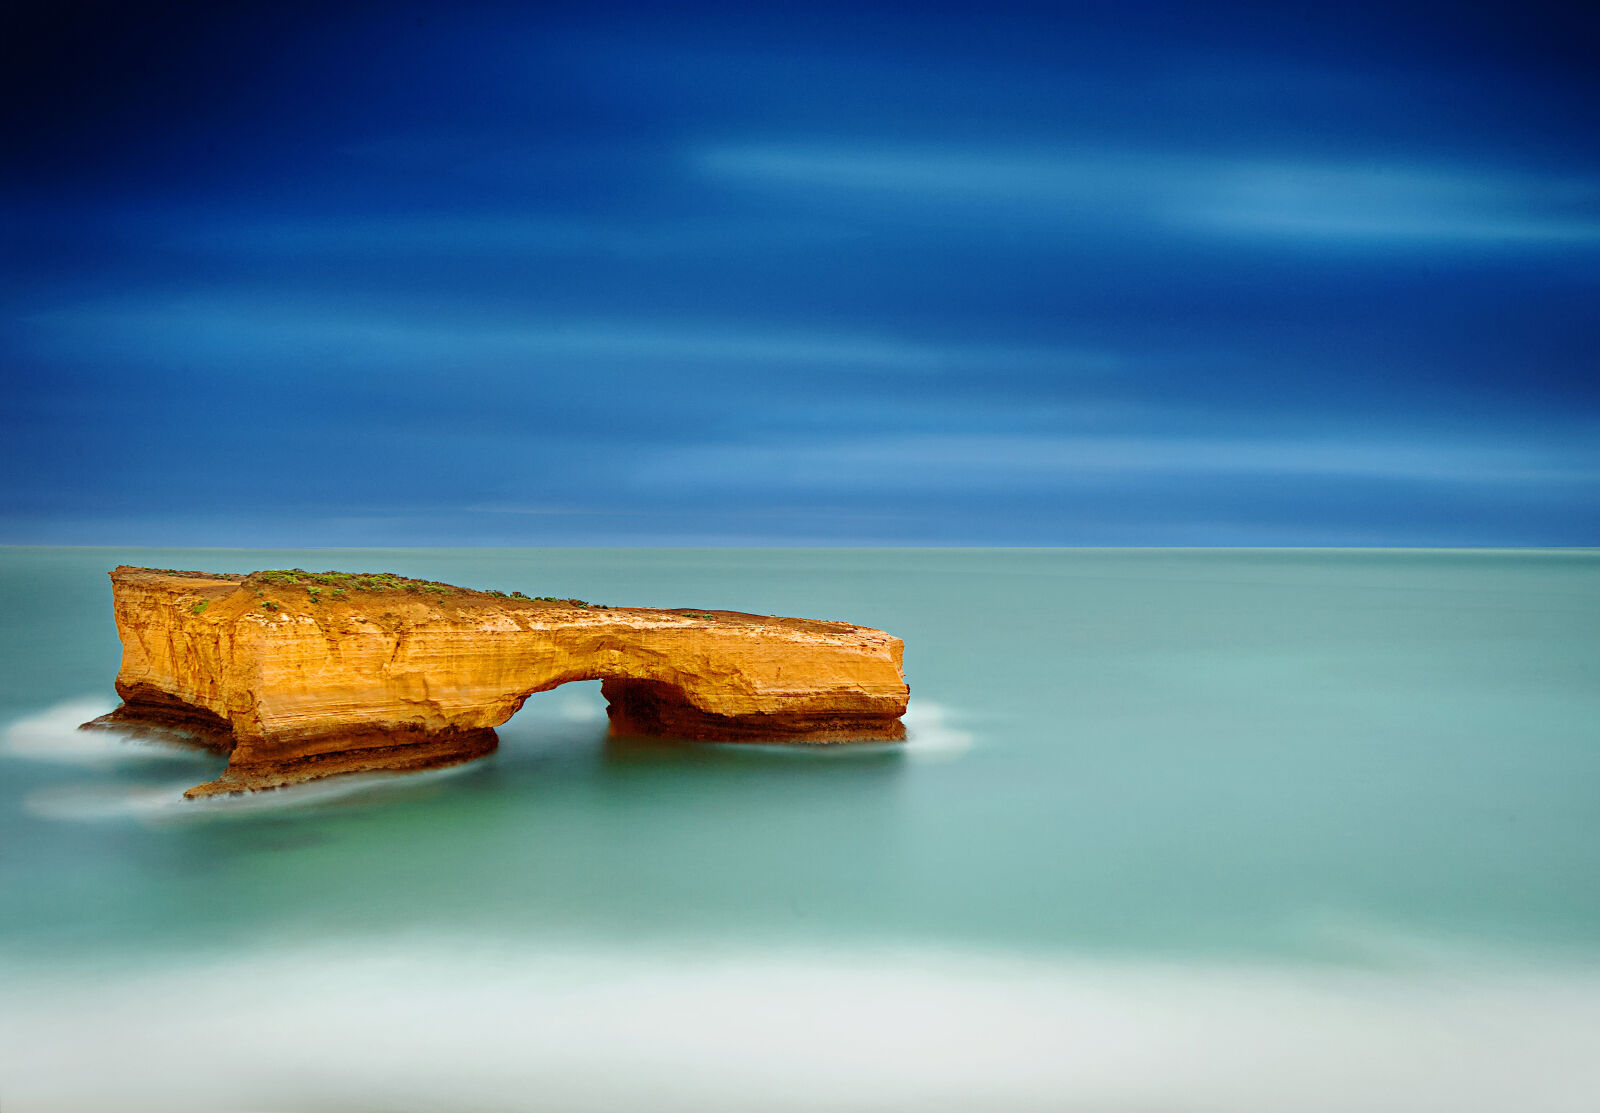 Nikon AF-S Nikkor 16-35mm F4G ED VR sample photo. Landscape, longexposure, ocean, seascape photography